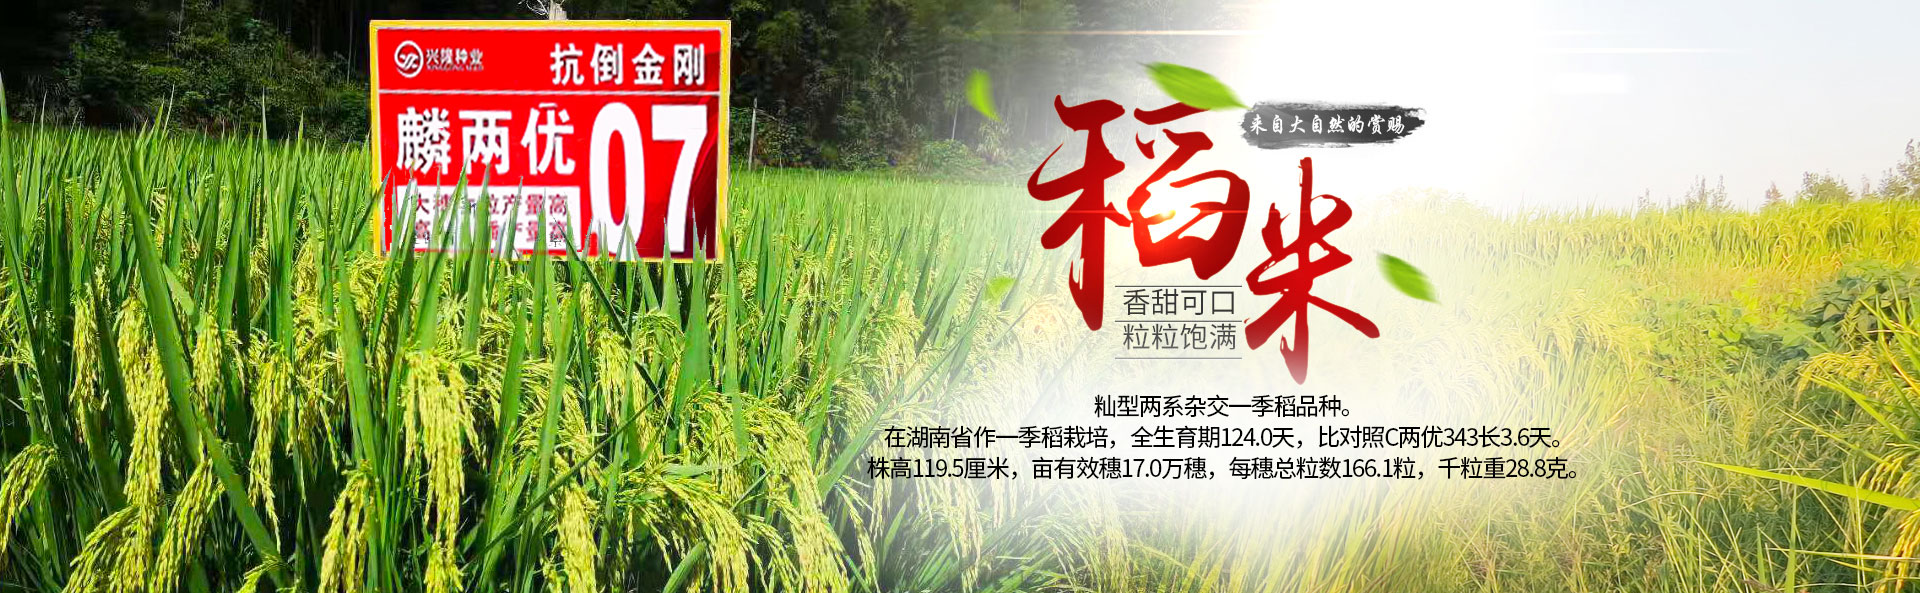 beat365正版唯一官网_长沙稻谷种植与销售|长沙农作物品种的选育